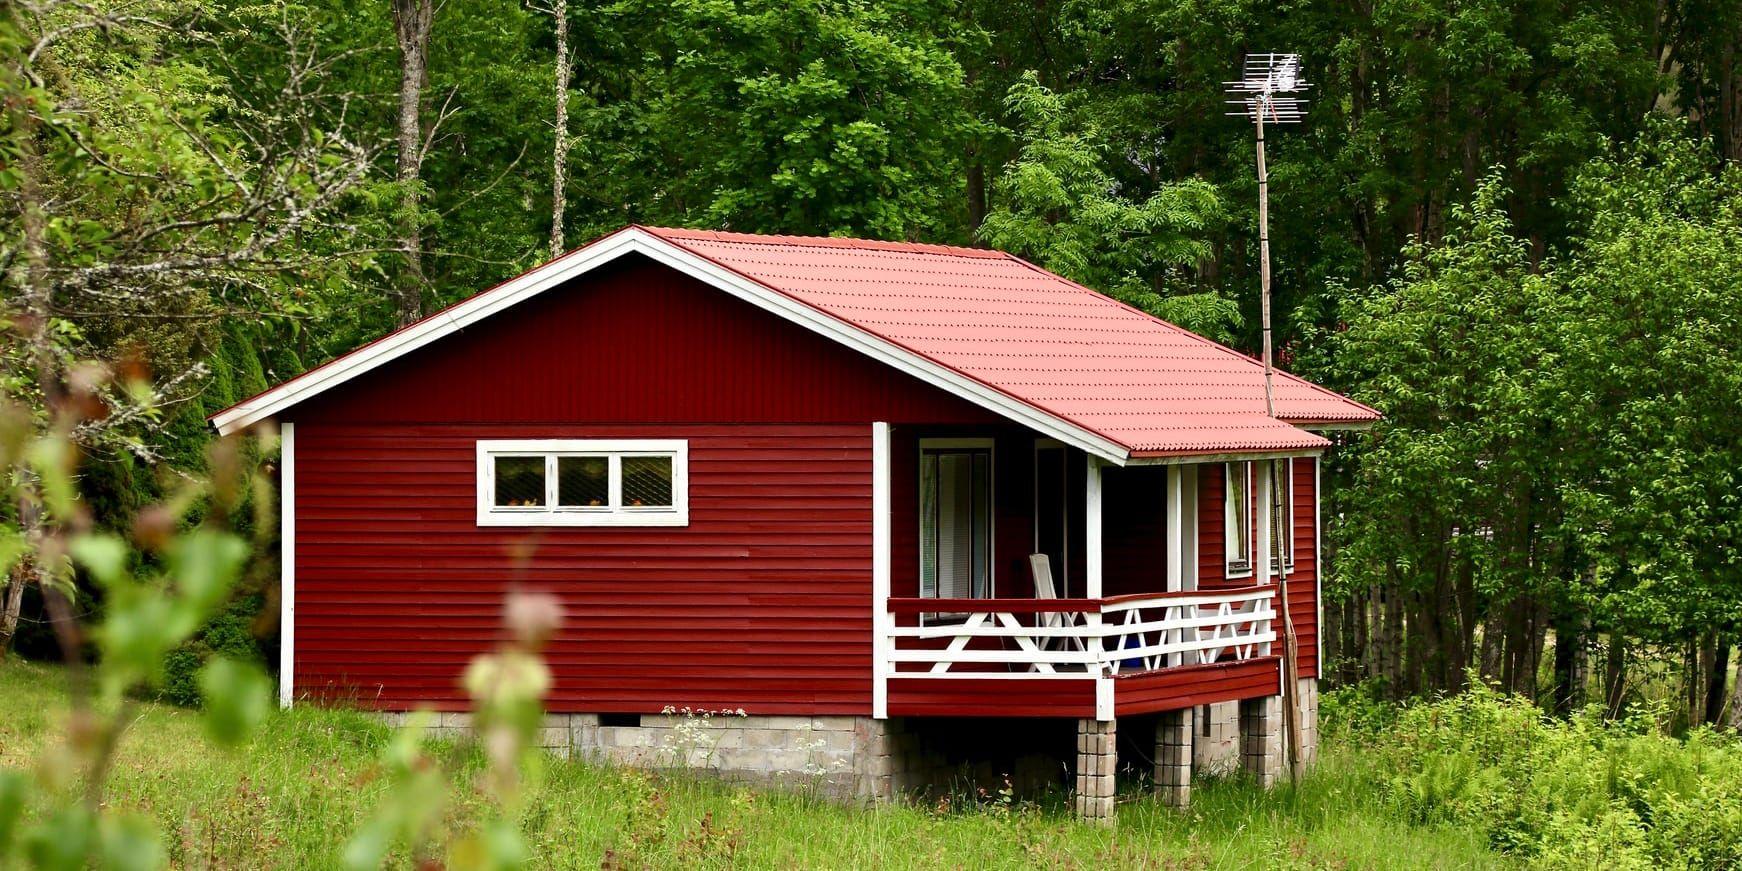 Fritidshusen i Halland är väldigt populära och prisökningen i länet ligger strax över rikssnittet.